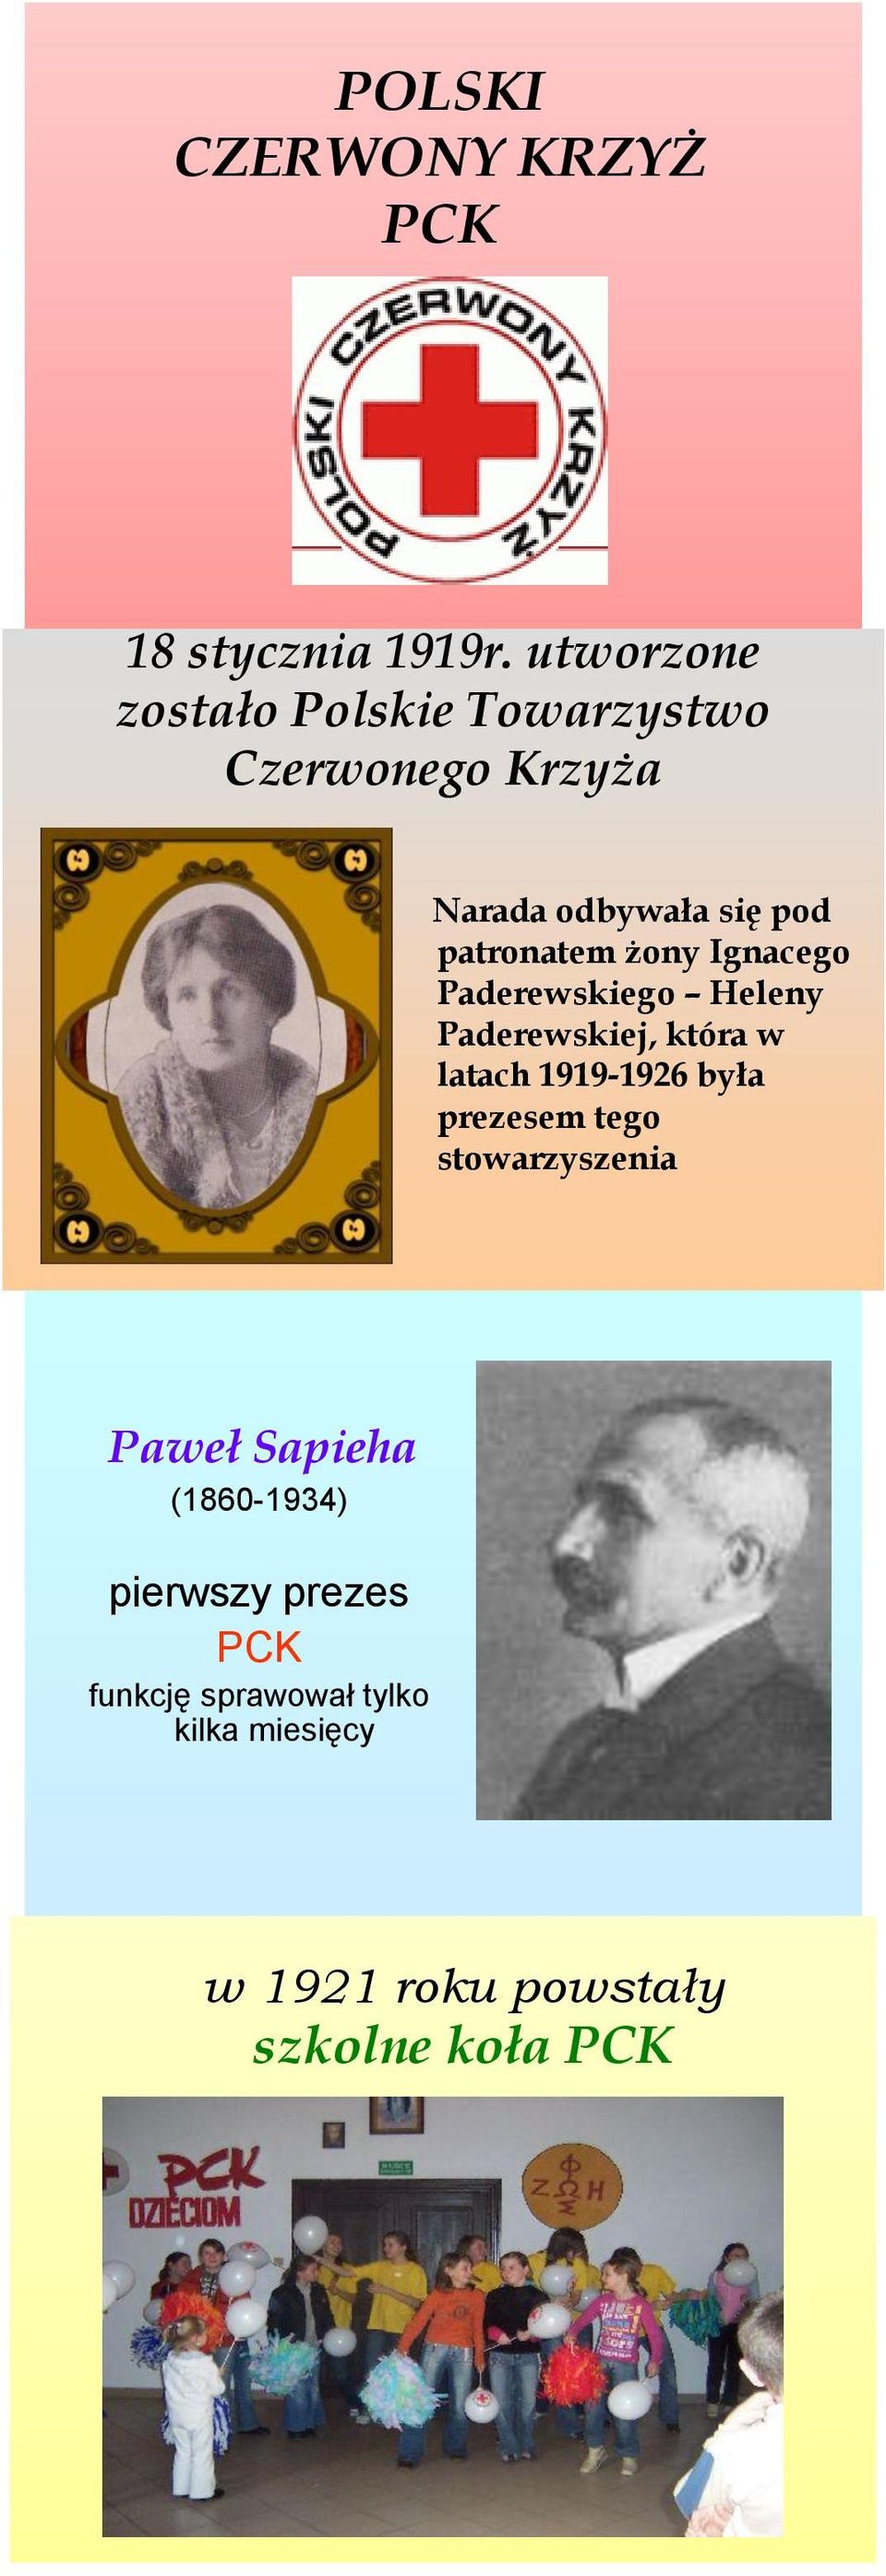 żony Ignacego Paderewskiego Heleny Paderewskiej, która w latach 1919-1926 była prezesem